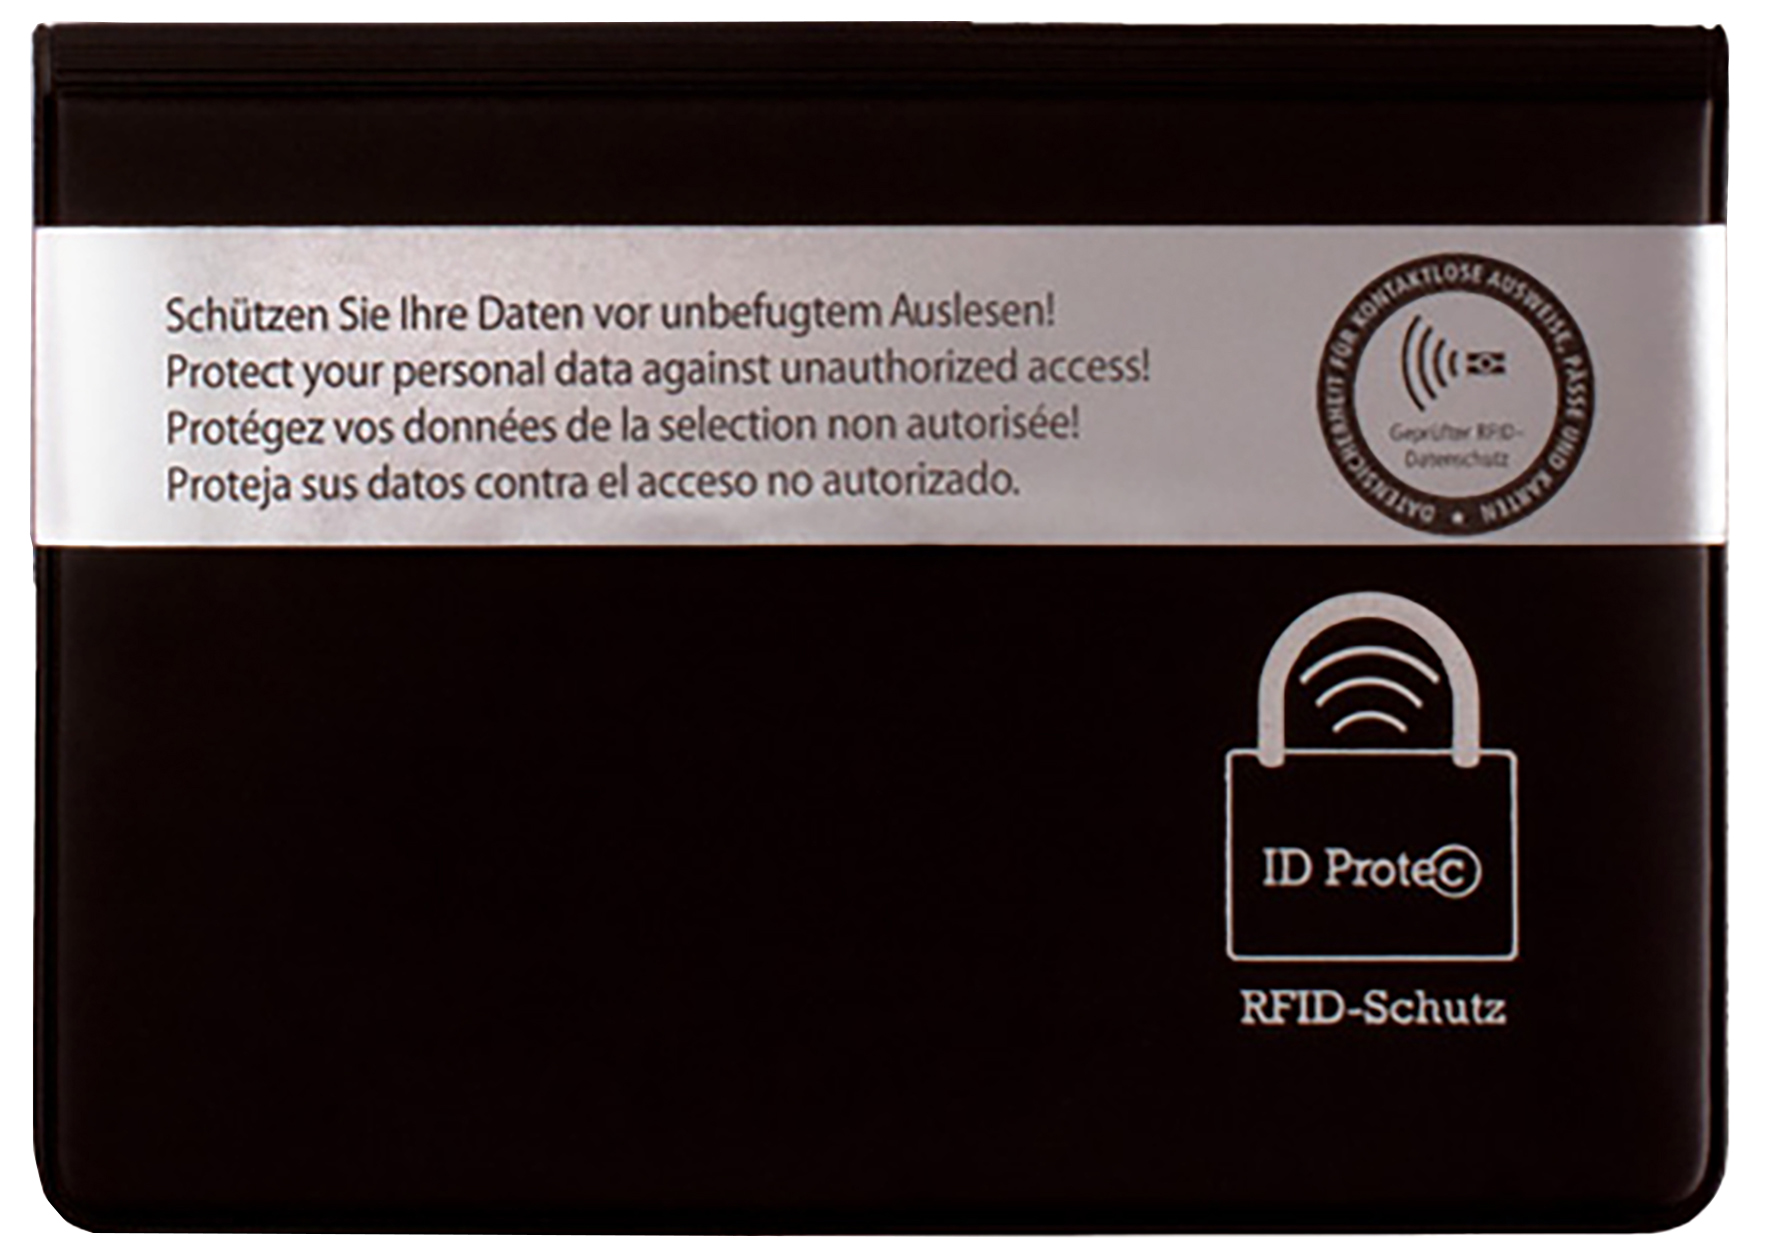 RFID-Schutzhülle für E-Personalausweis und 3 weitere Karten